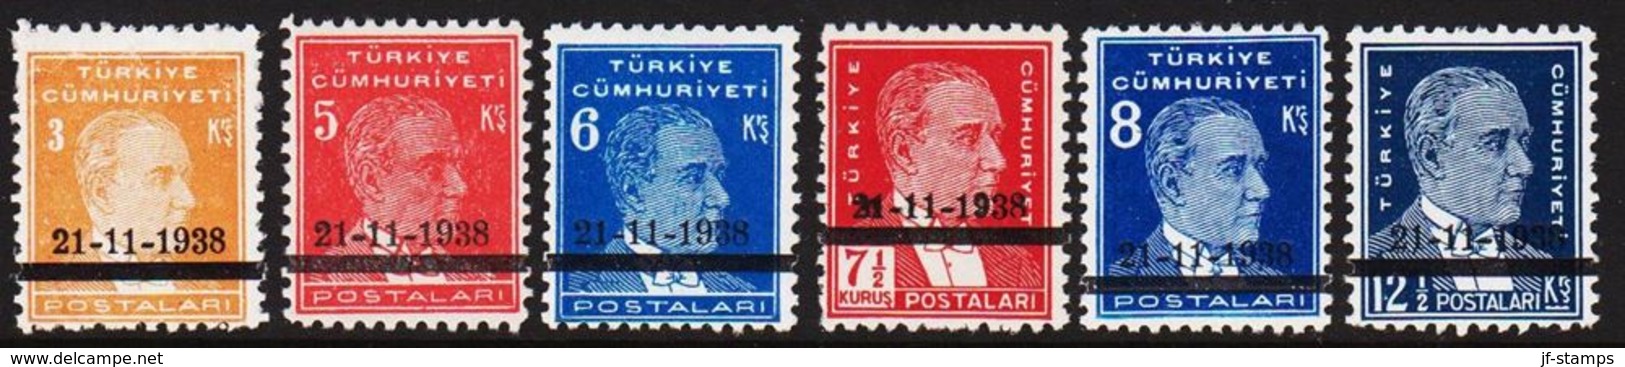 1938. 21-11-1938. Complete Set With 6 Stamps. (Michel 1041-1046) - JF303702 - Ongebruikt